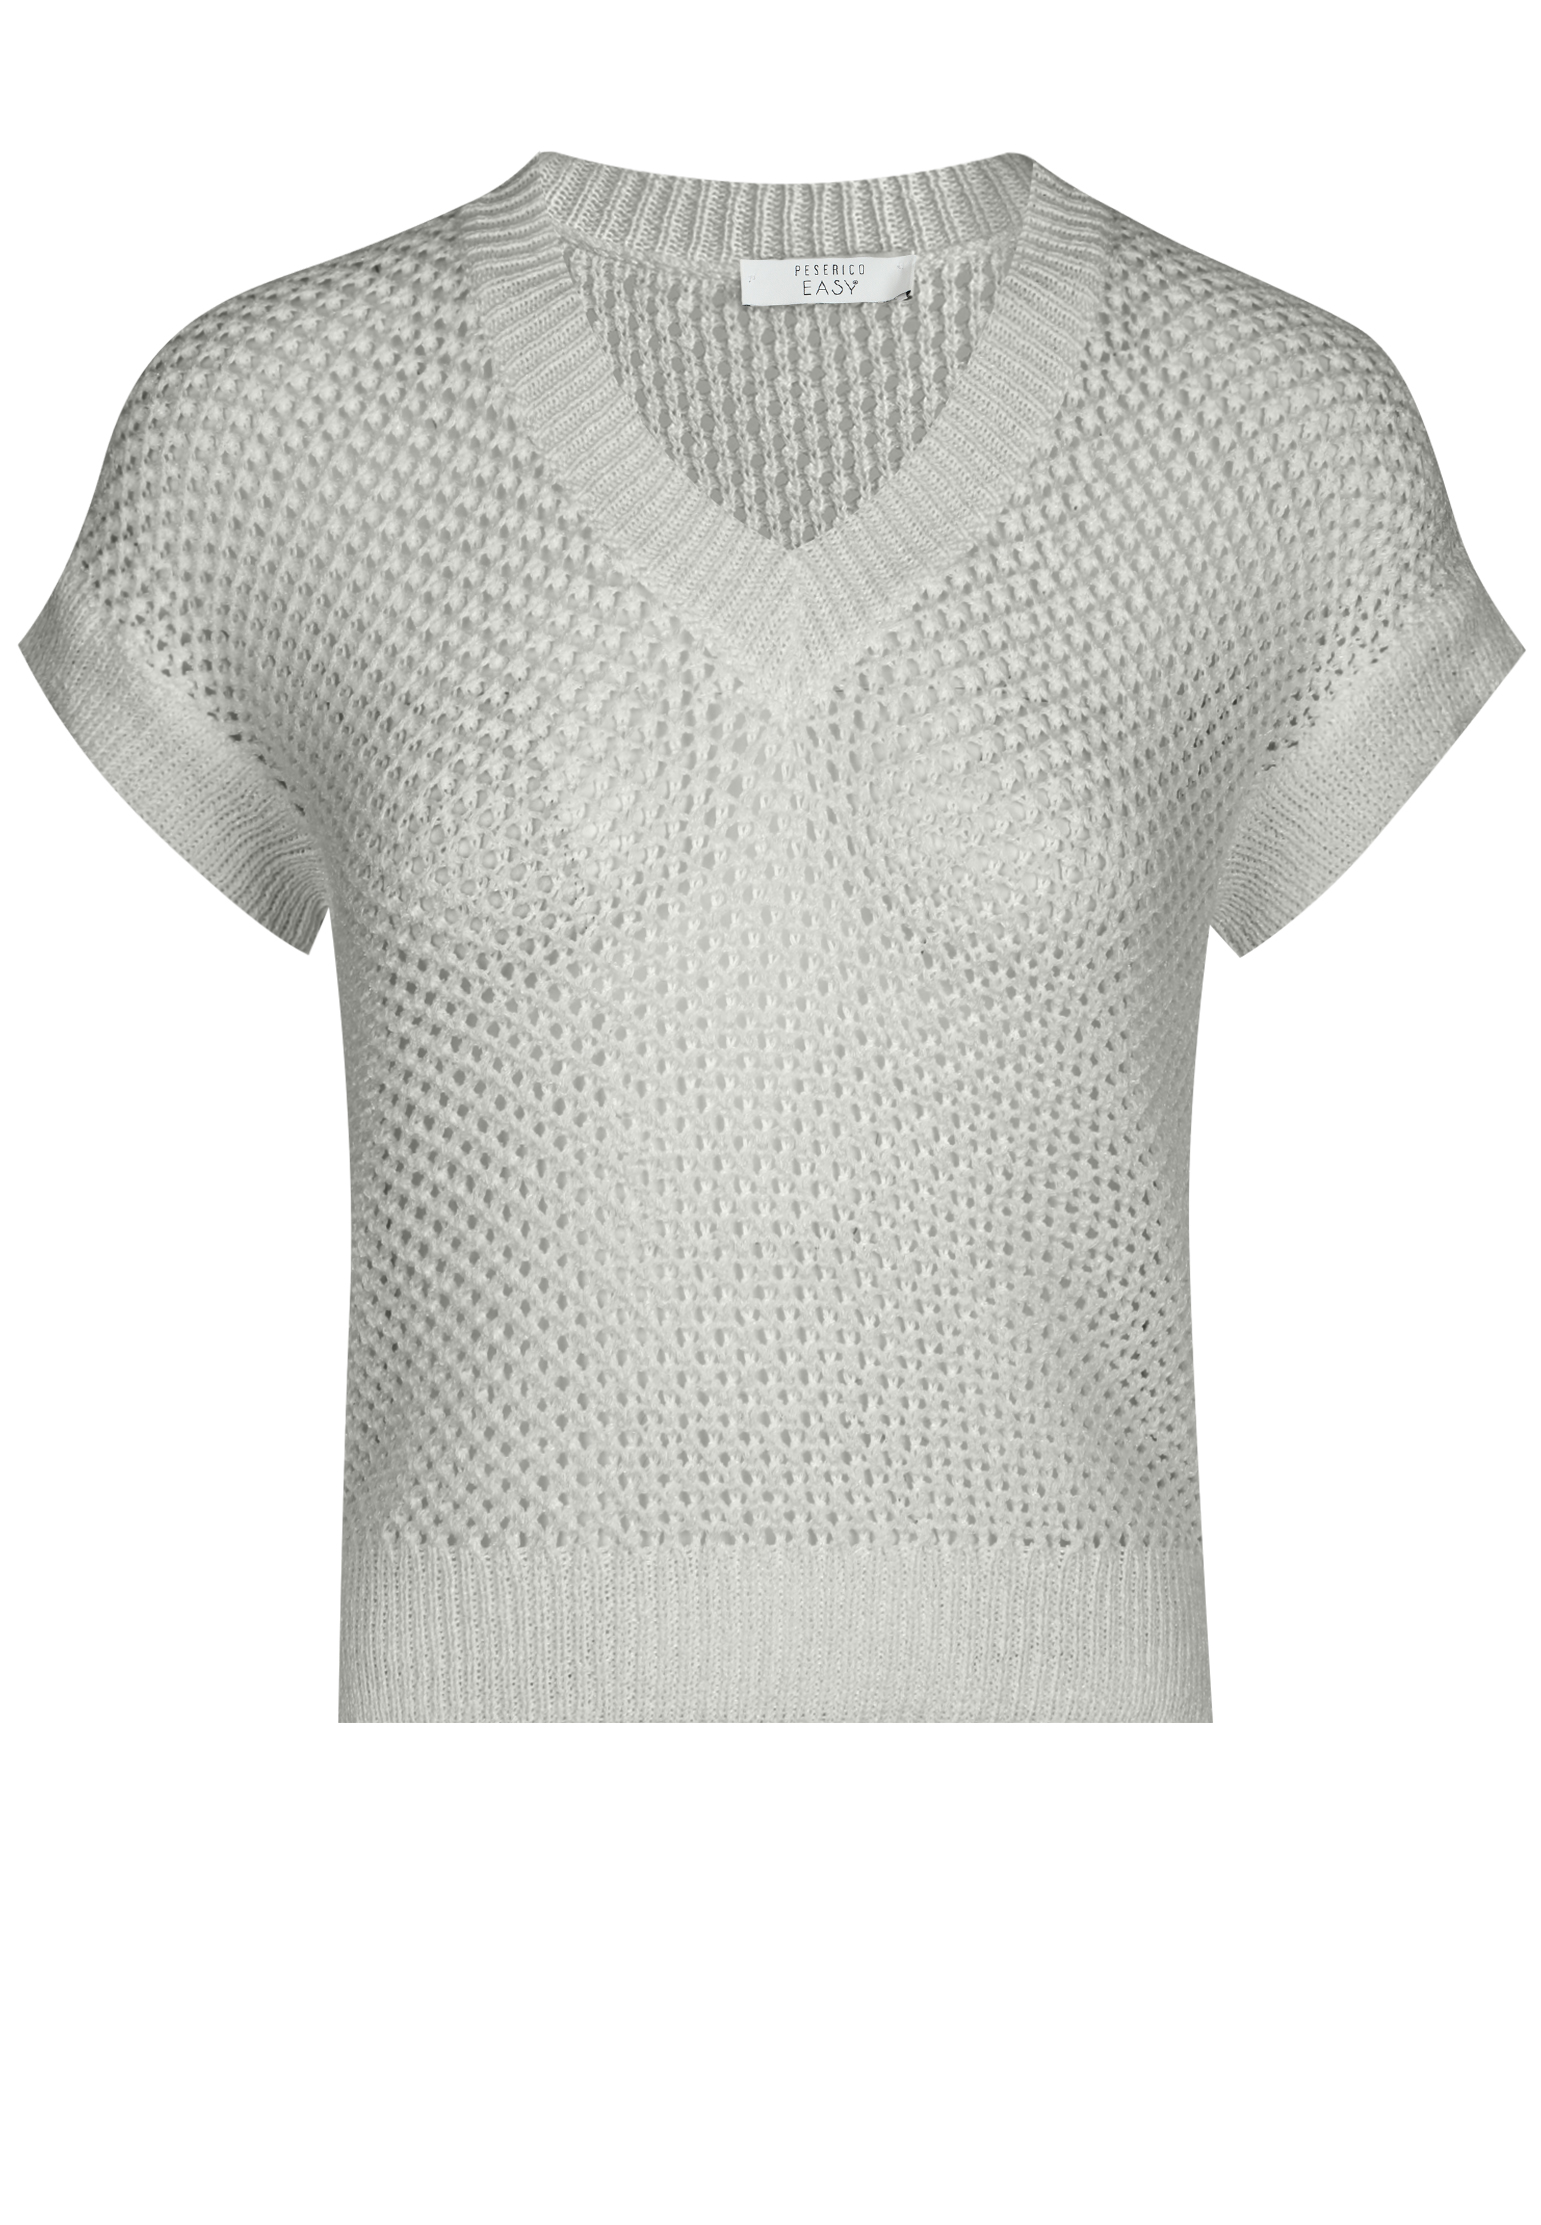 Пуловер PESERICO EASY Серый, размер 42 154767 - фото 1